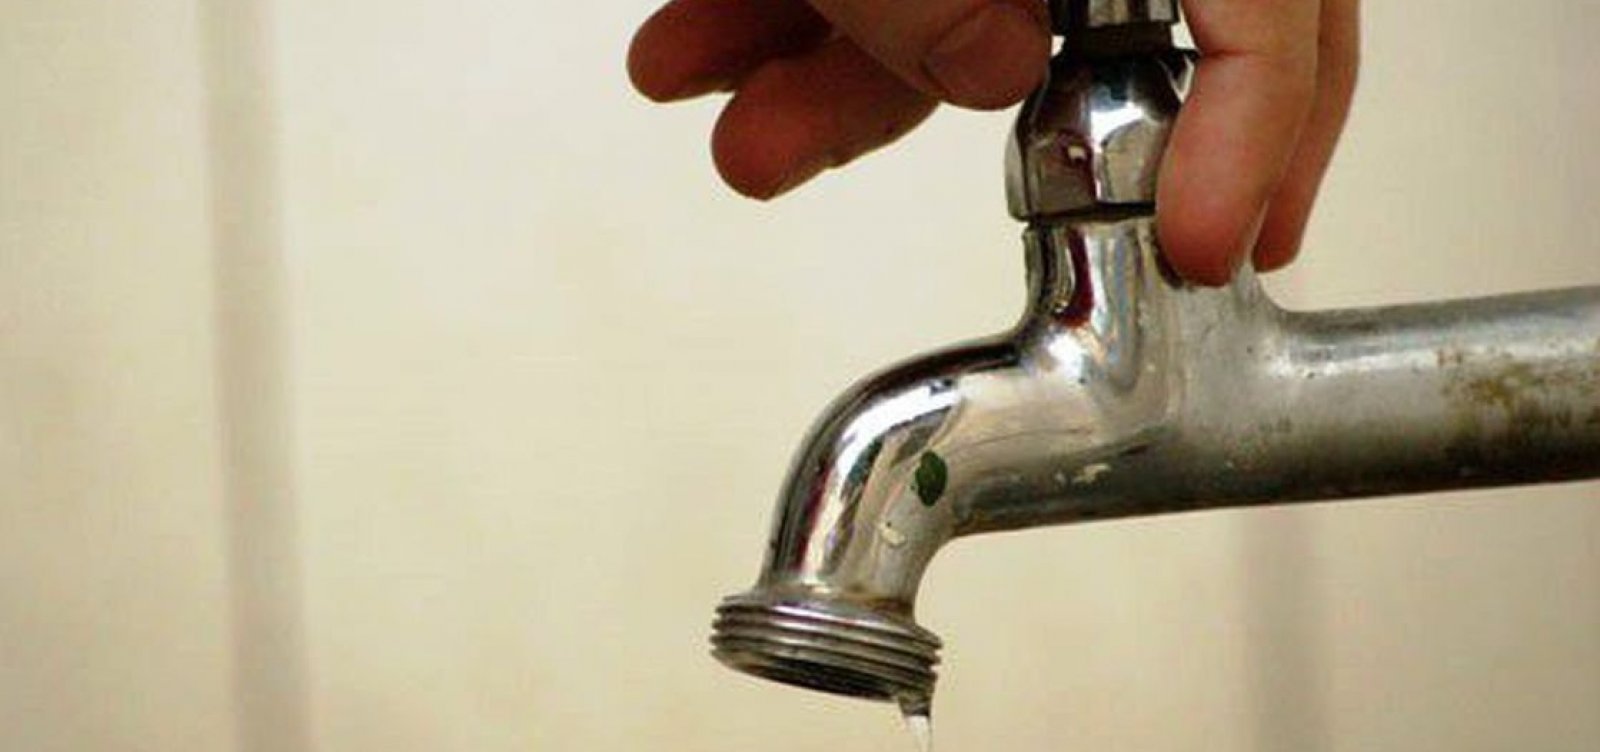 Abastecimento de água será interrompido em pelo menos 14 bairros de Salvador nesta segunda; confira